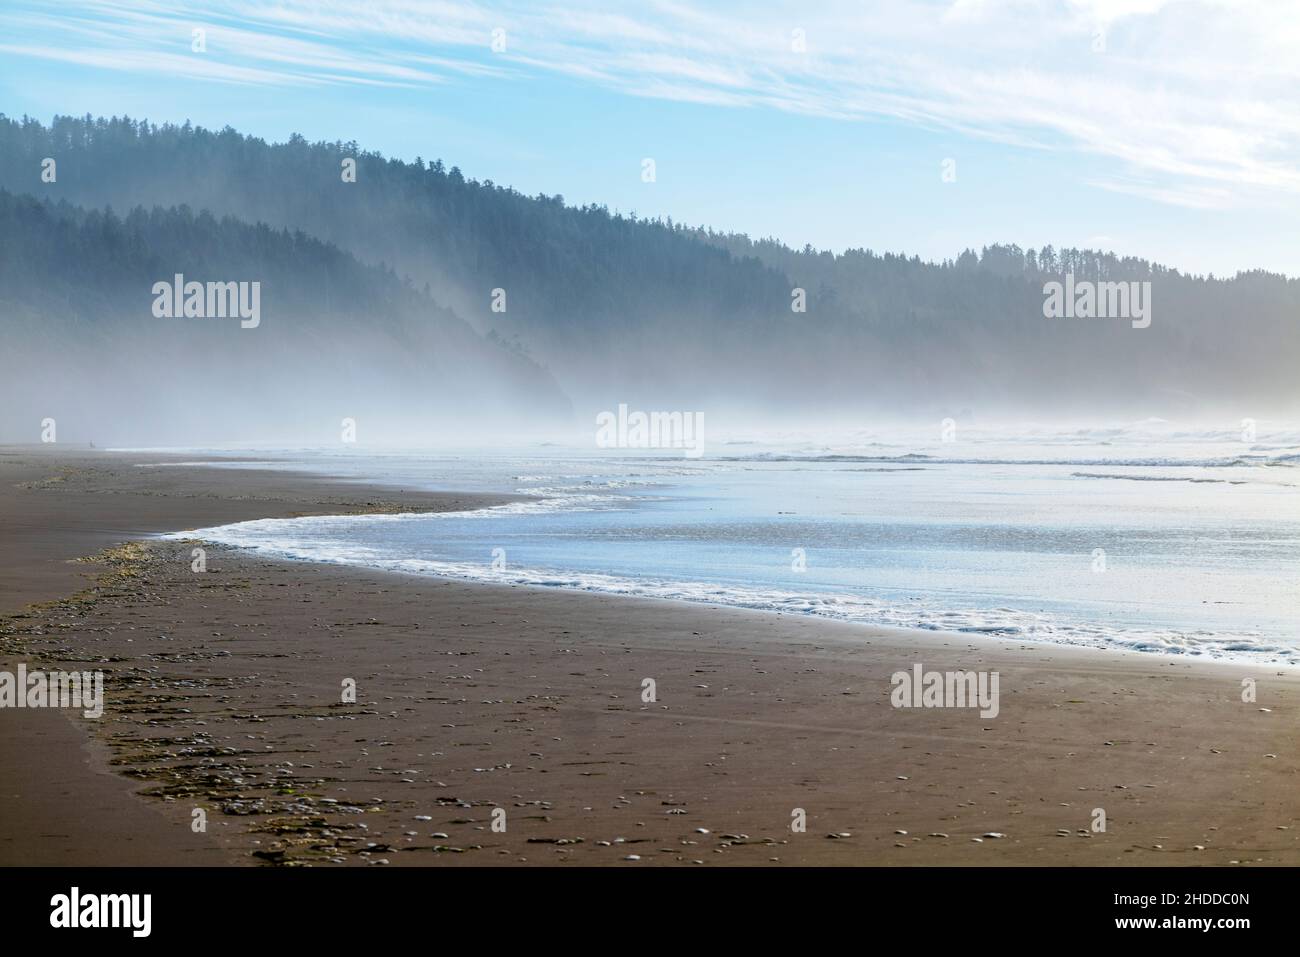 Océano; olas; nubes; niebla; Parque Estatal Cape Lookout; Océano Pacífico; costa de Oregón; Estados Unidos Foto de stock